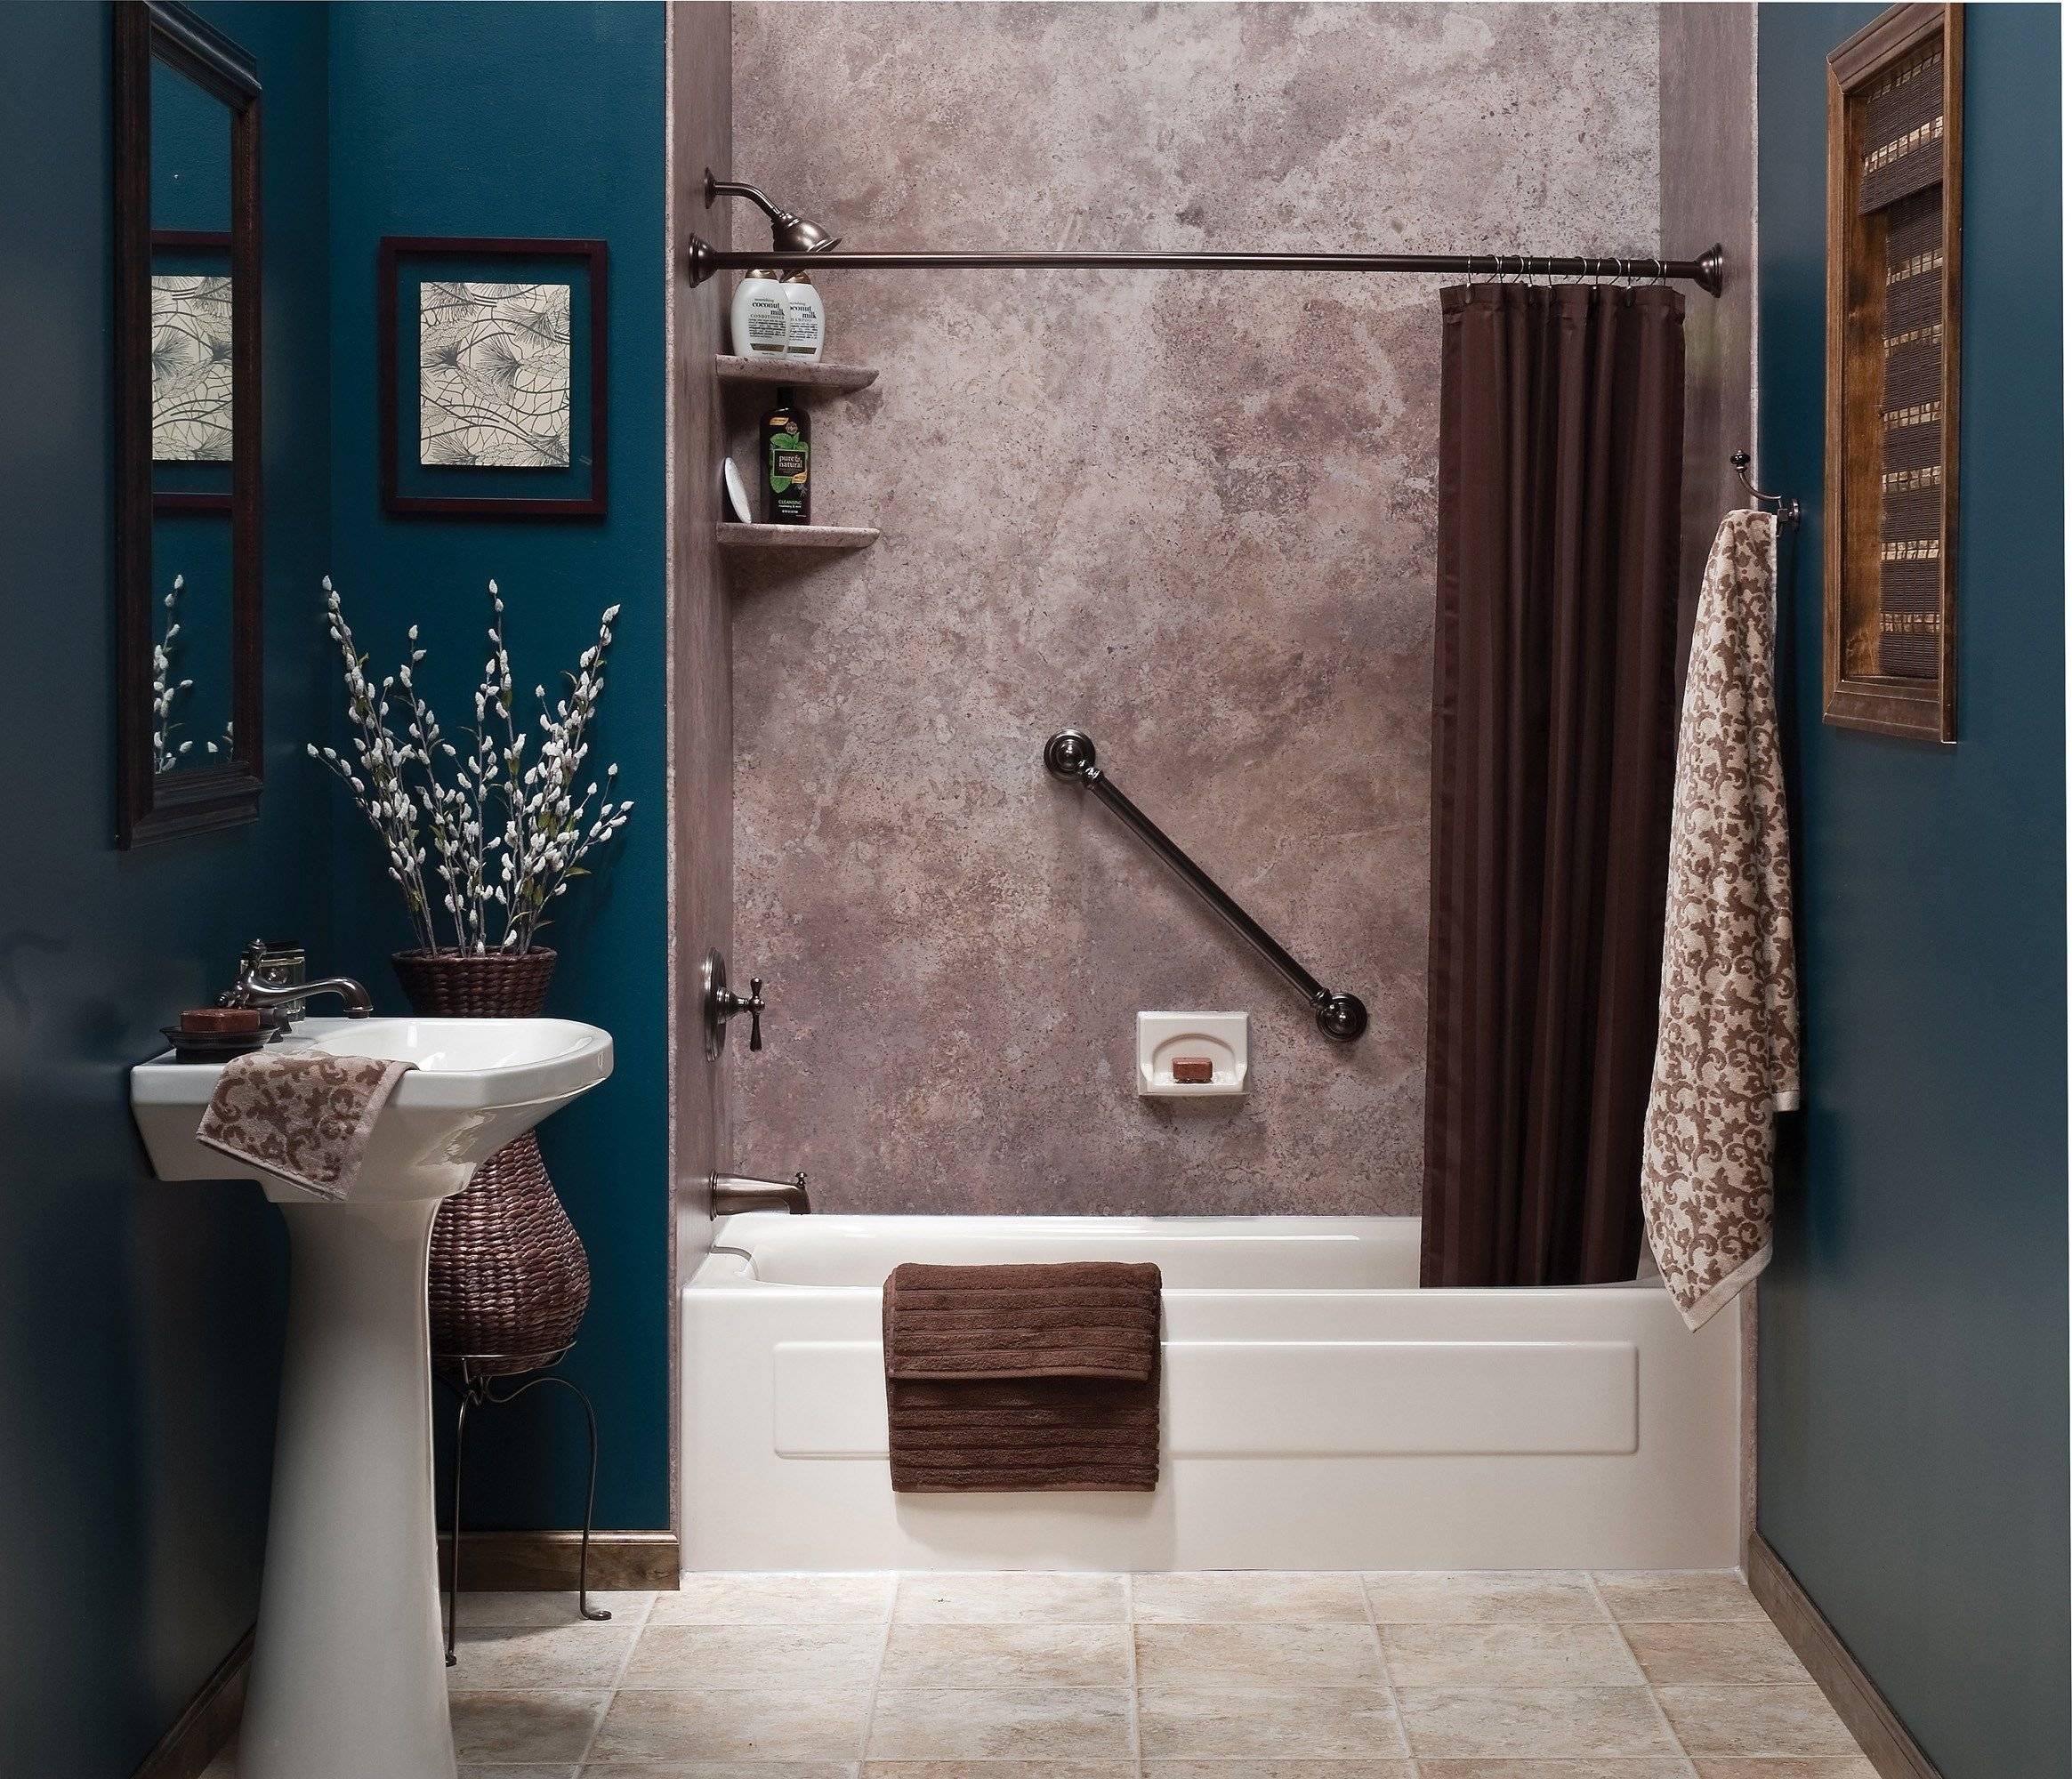 Варианты отделки стен в ванной комнате: популярные материалы, их преимущества и недостатки